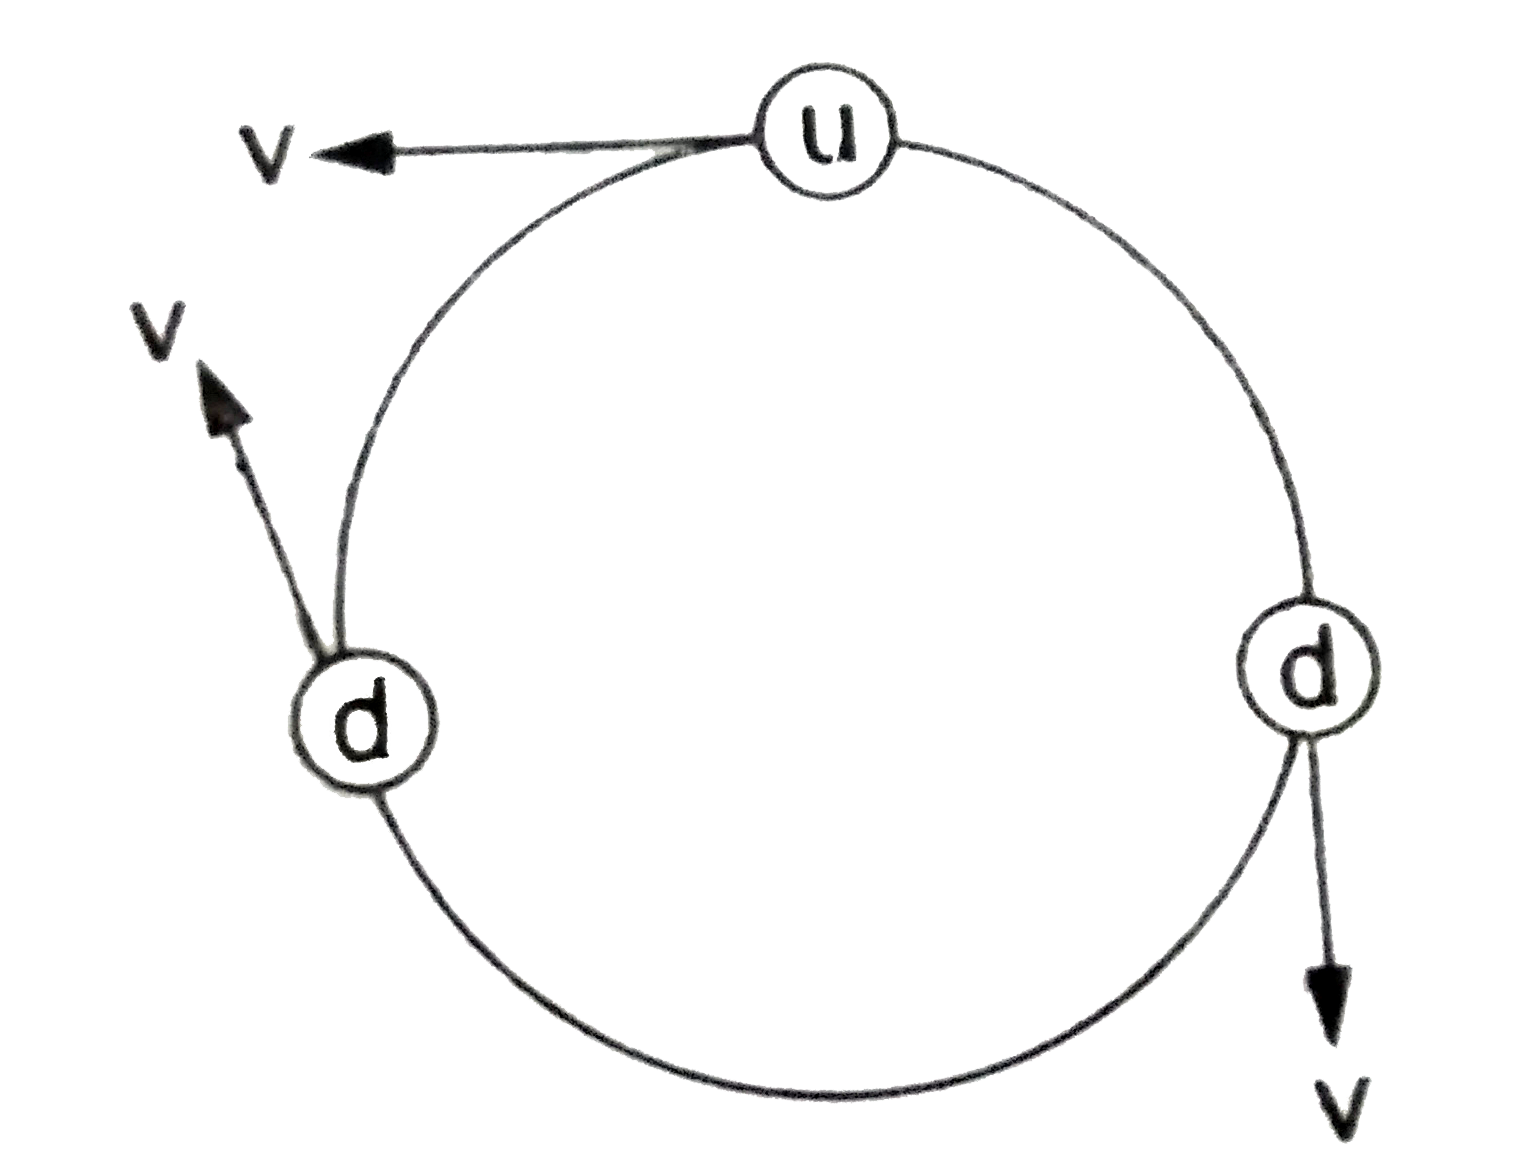 नाभिक की संरचना प्रोटॉन तथा न्यूट्रॉन के कारण होती हैं , जहाँ प्रोटॉन धनावेशित कण हैं जबकि न्यूट्रॉन अनावेशित होता हैं । न्यूट्रॉन के क्वार्क मॉडल ( quark model ) के आधार पर इसका नेट आवेश शून्य रहने पर भी इसे अशून्य (nonzero) चुबंकीय आघूर्ण प्राप्त हैं जिसका z-घटक 9.66 xx 10^(-27) A - m^(2) होता हैं । इस संकल्पना की व्याख्या न्यूट्रॉन के आंतरिक बनावट के आधार पर की जा सकती हैं । न्यूट्रॉन की सरंचना तीन प्रकार के मौलिक कणों ( fundamental particles) व्दारा होती हैं जिन्हें क्वार्क (quark) कहा जाता हैंः   एक अप क्वार्क ( up quark ) , संकेत u , आवेश  + (2e)/(3)   दो डाउन क्वार्क ( down quark ) , संकेत  d , प्रत्येक पर आवेश - (e)/(3)   तीन प्रकार के कणों के सम्मिलित प्रभाव से न्यूट्रॉन का नेट आवेश =  (2e)/(3) - (e)/(3) - (e)/(3)  = शून्य । यदि ये क्वार्क गतिमान हो तब इनके व्दारा उत्पन्न चुंबकीय आघूर्ण अशून्य हो सकता हैं । चित्र में प्रदर्शित सरल मॉडल में u - क्वार्क  r त्रिज्या  v से वामावर्त दिशा में (anticlockwise) घूम रहा हैं तथा दोनों d - क्वार्क उसी वृतीय पथ पर समान वेग v से दक्षिणावर्त दिशा में (clockwise) घूम रहे हैं ।      u - क्वार्क की एकसमान वृत्तीय गति के कारण तुल्य विद्युत - धारा हैं